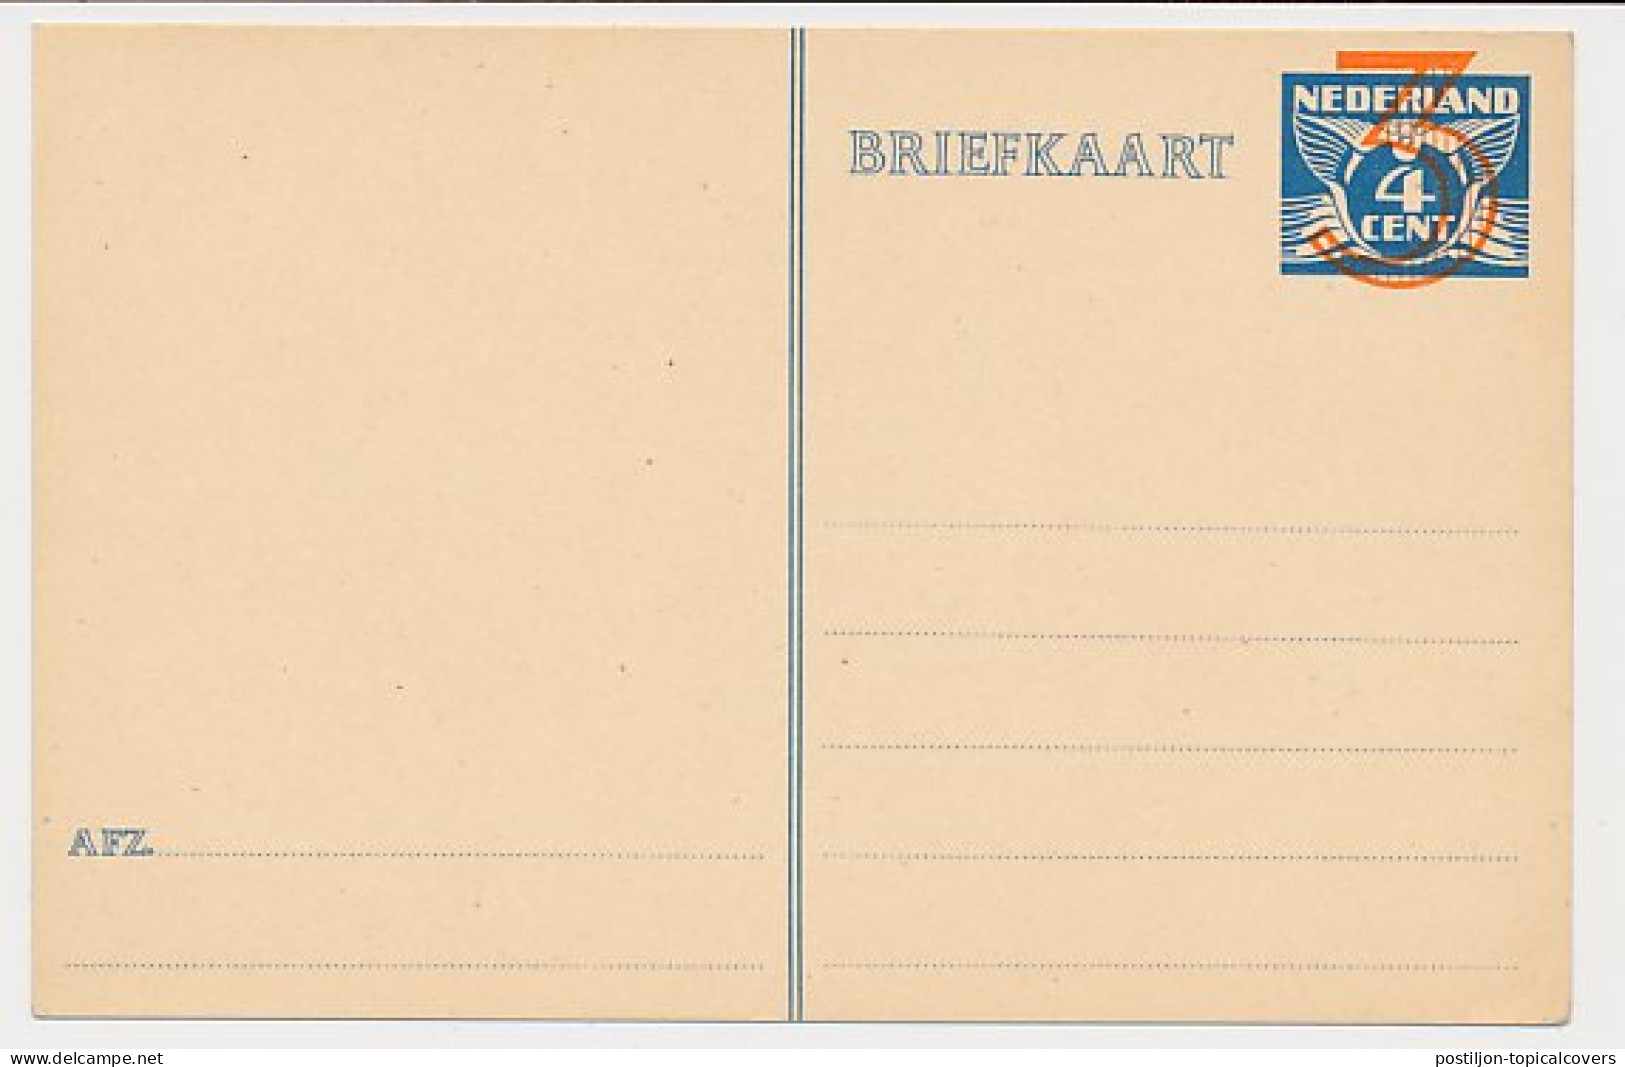 Briefkaart G. 258 - Entiers Postaux